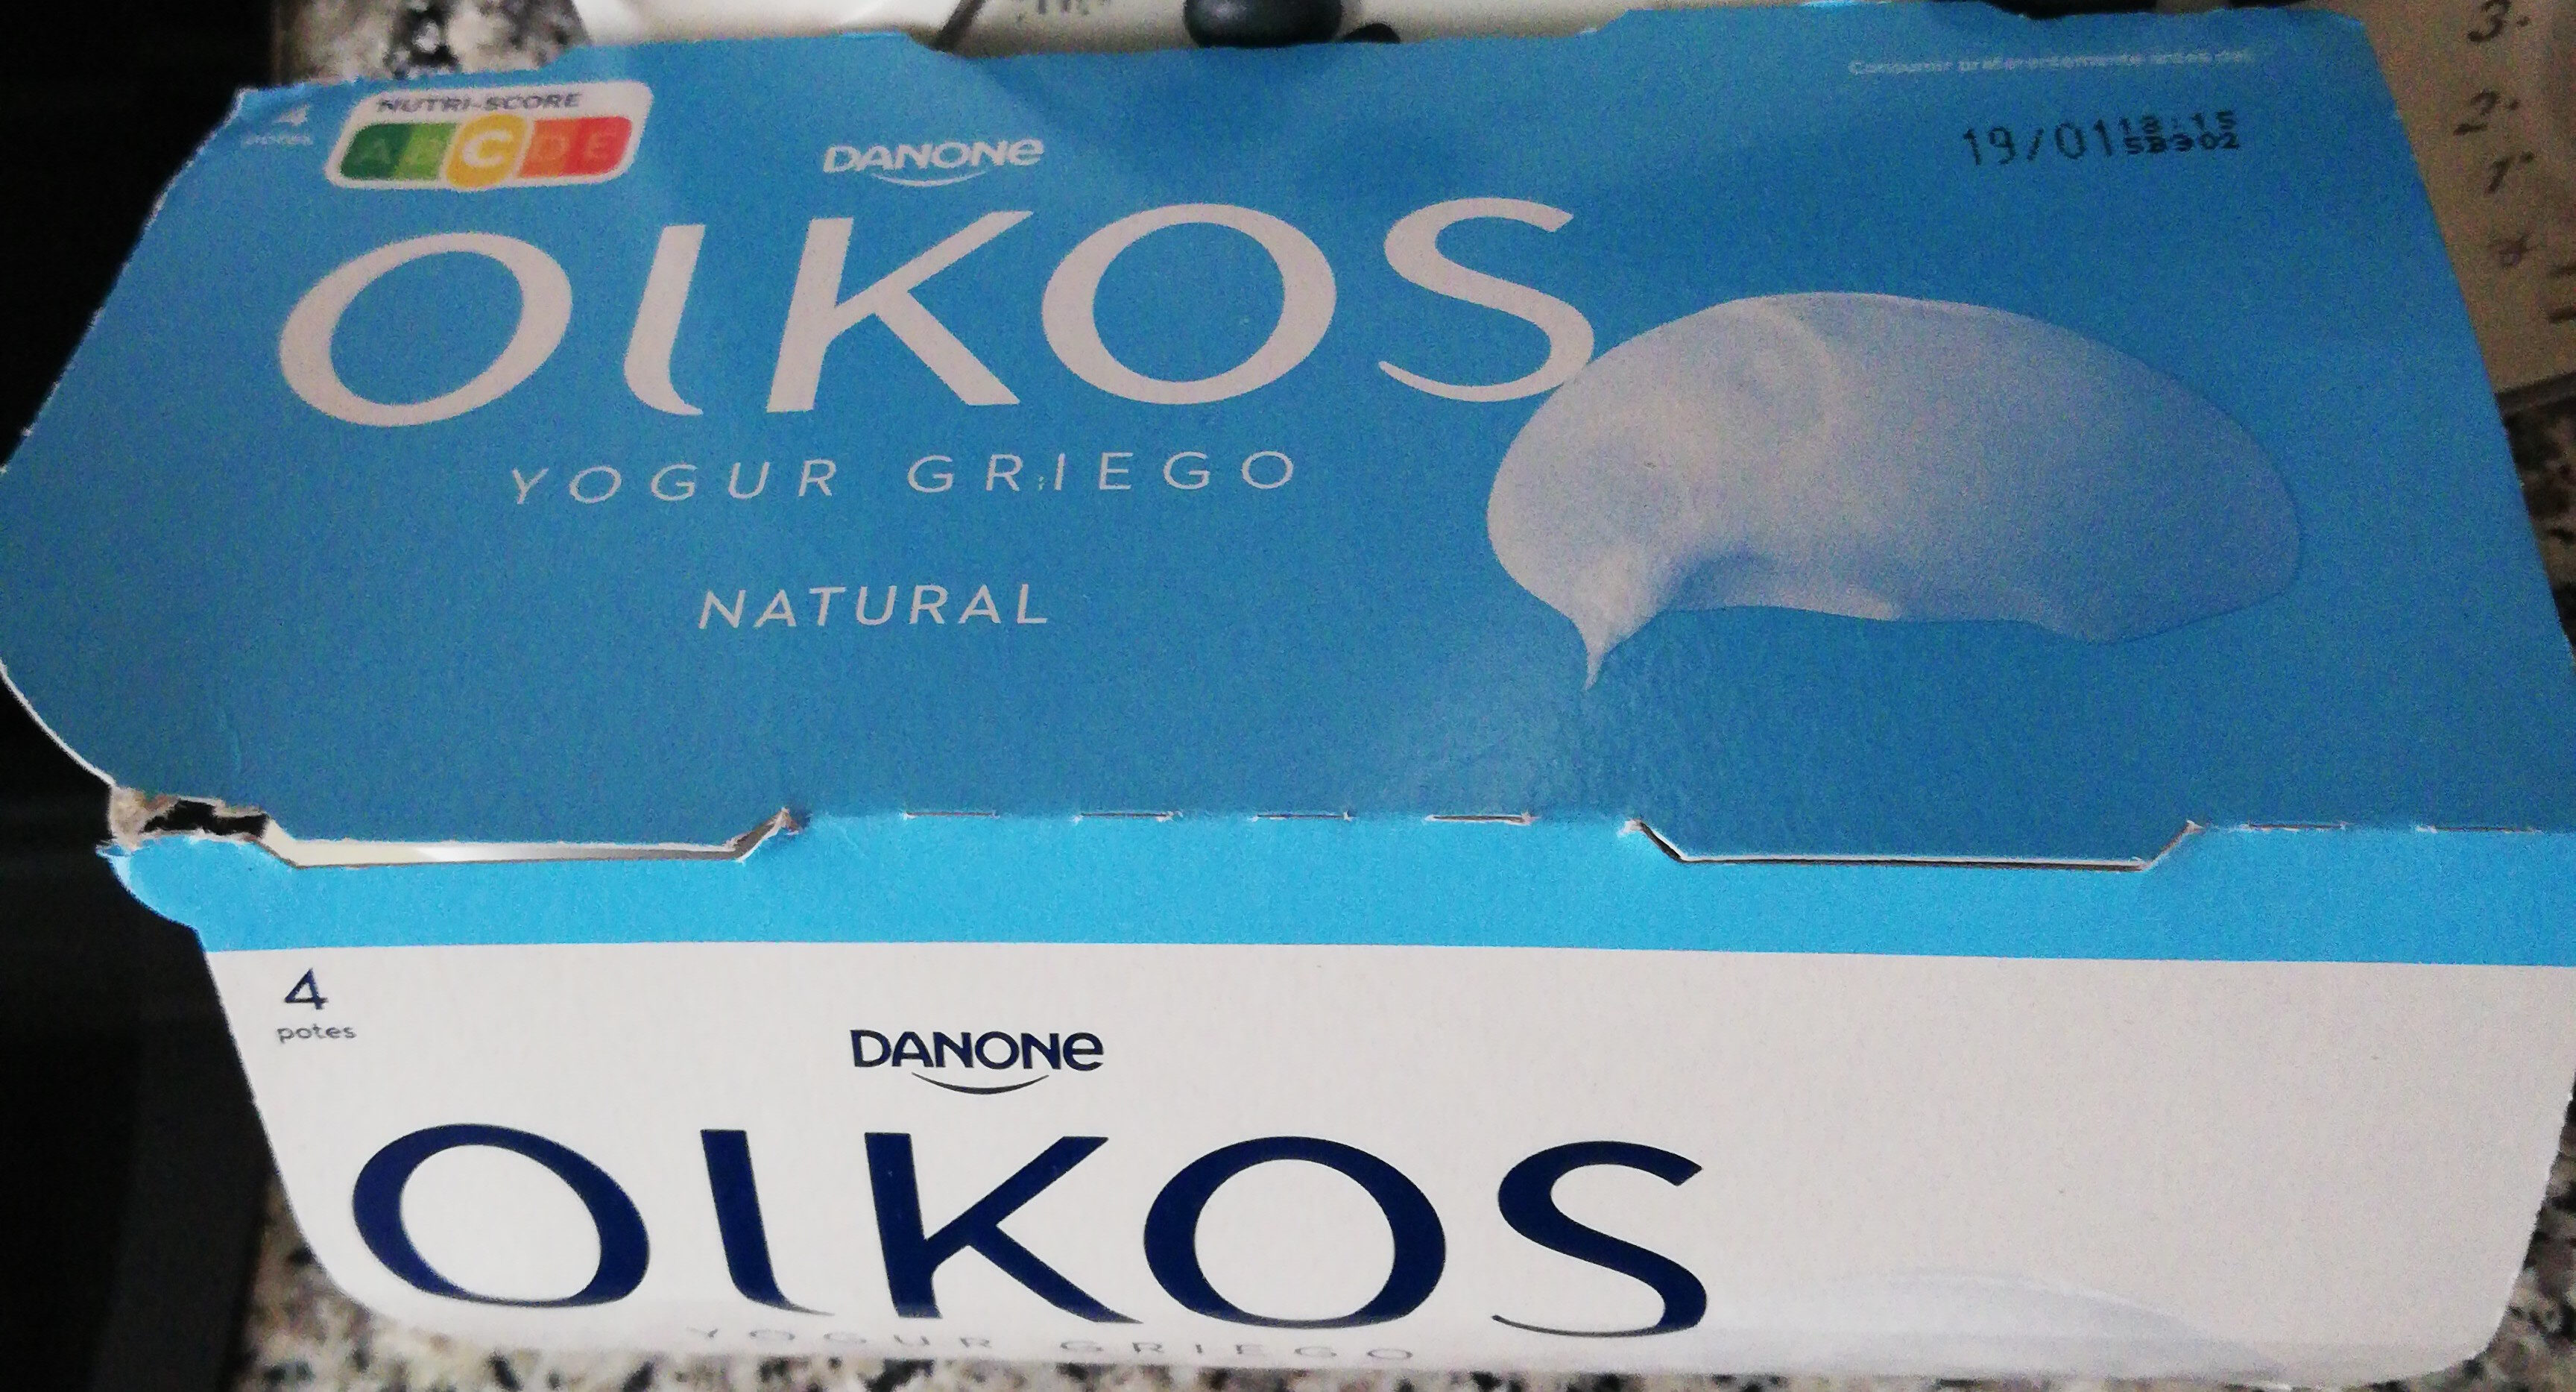 Oikos yogur griego natural - Producto